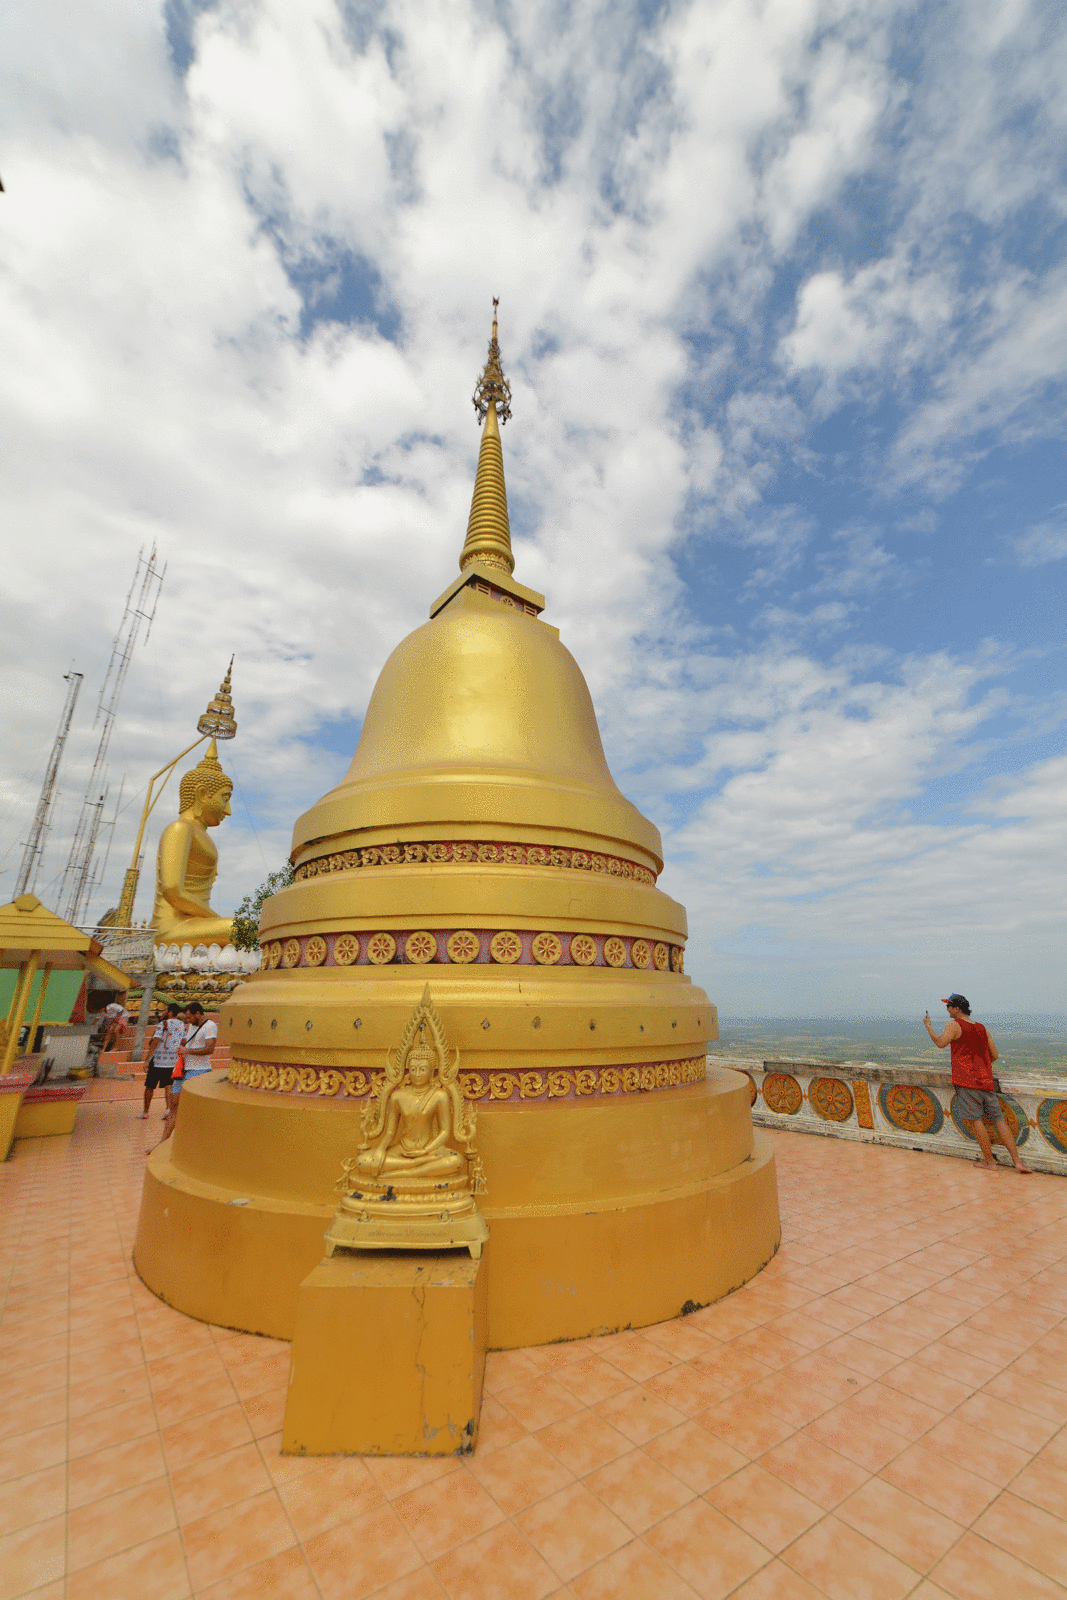 Thaïlande 2018 : Krabi , 1237 marches pour se rapprocher de Bouddha ...